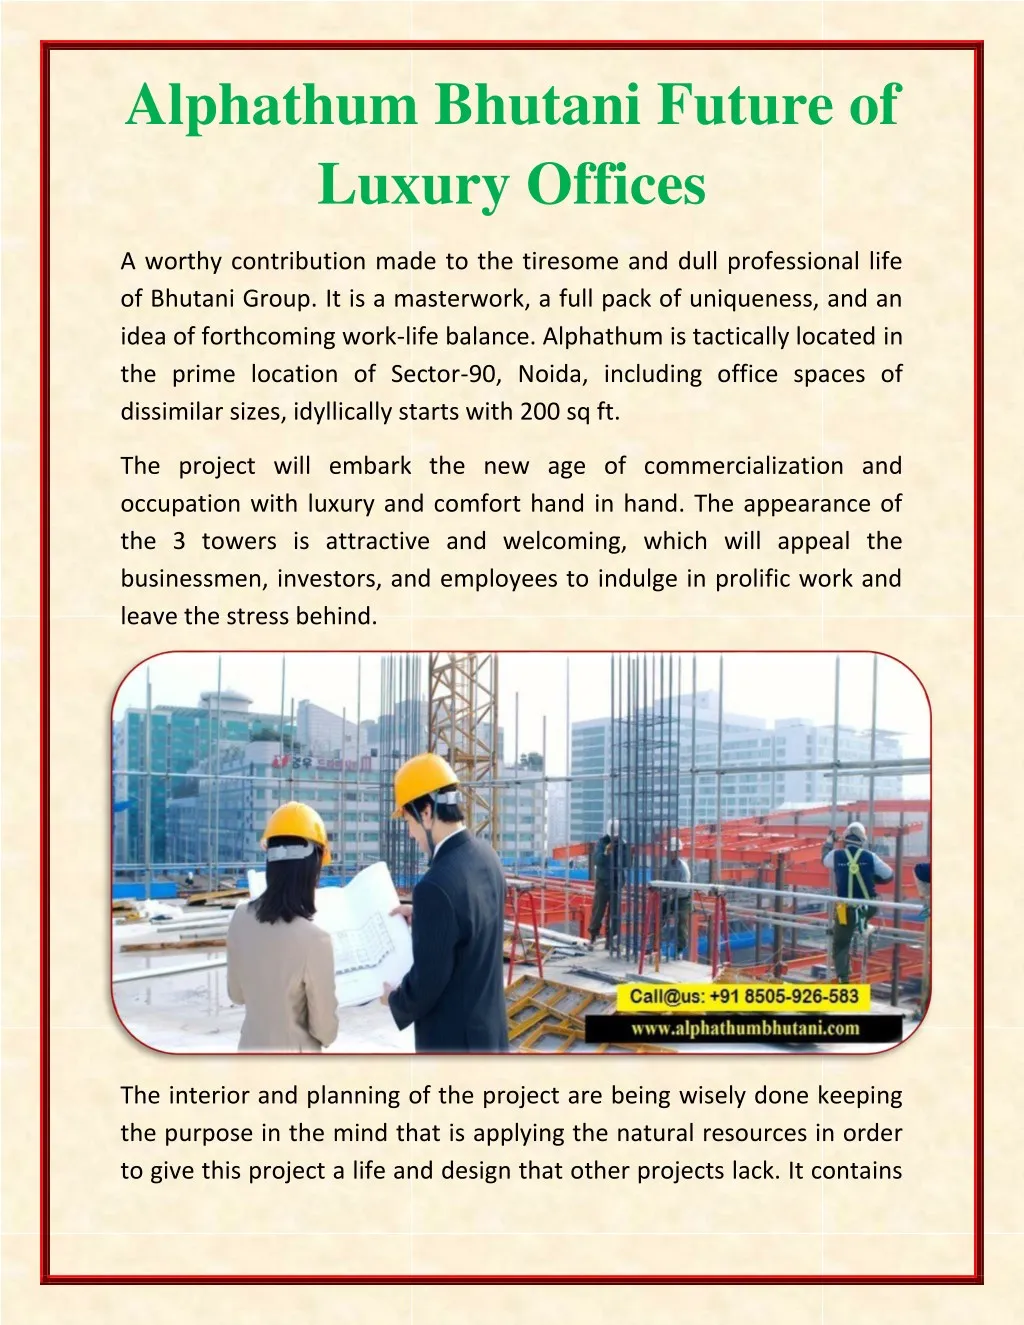 alphathum bhutani future of luxury offices